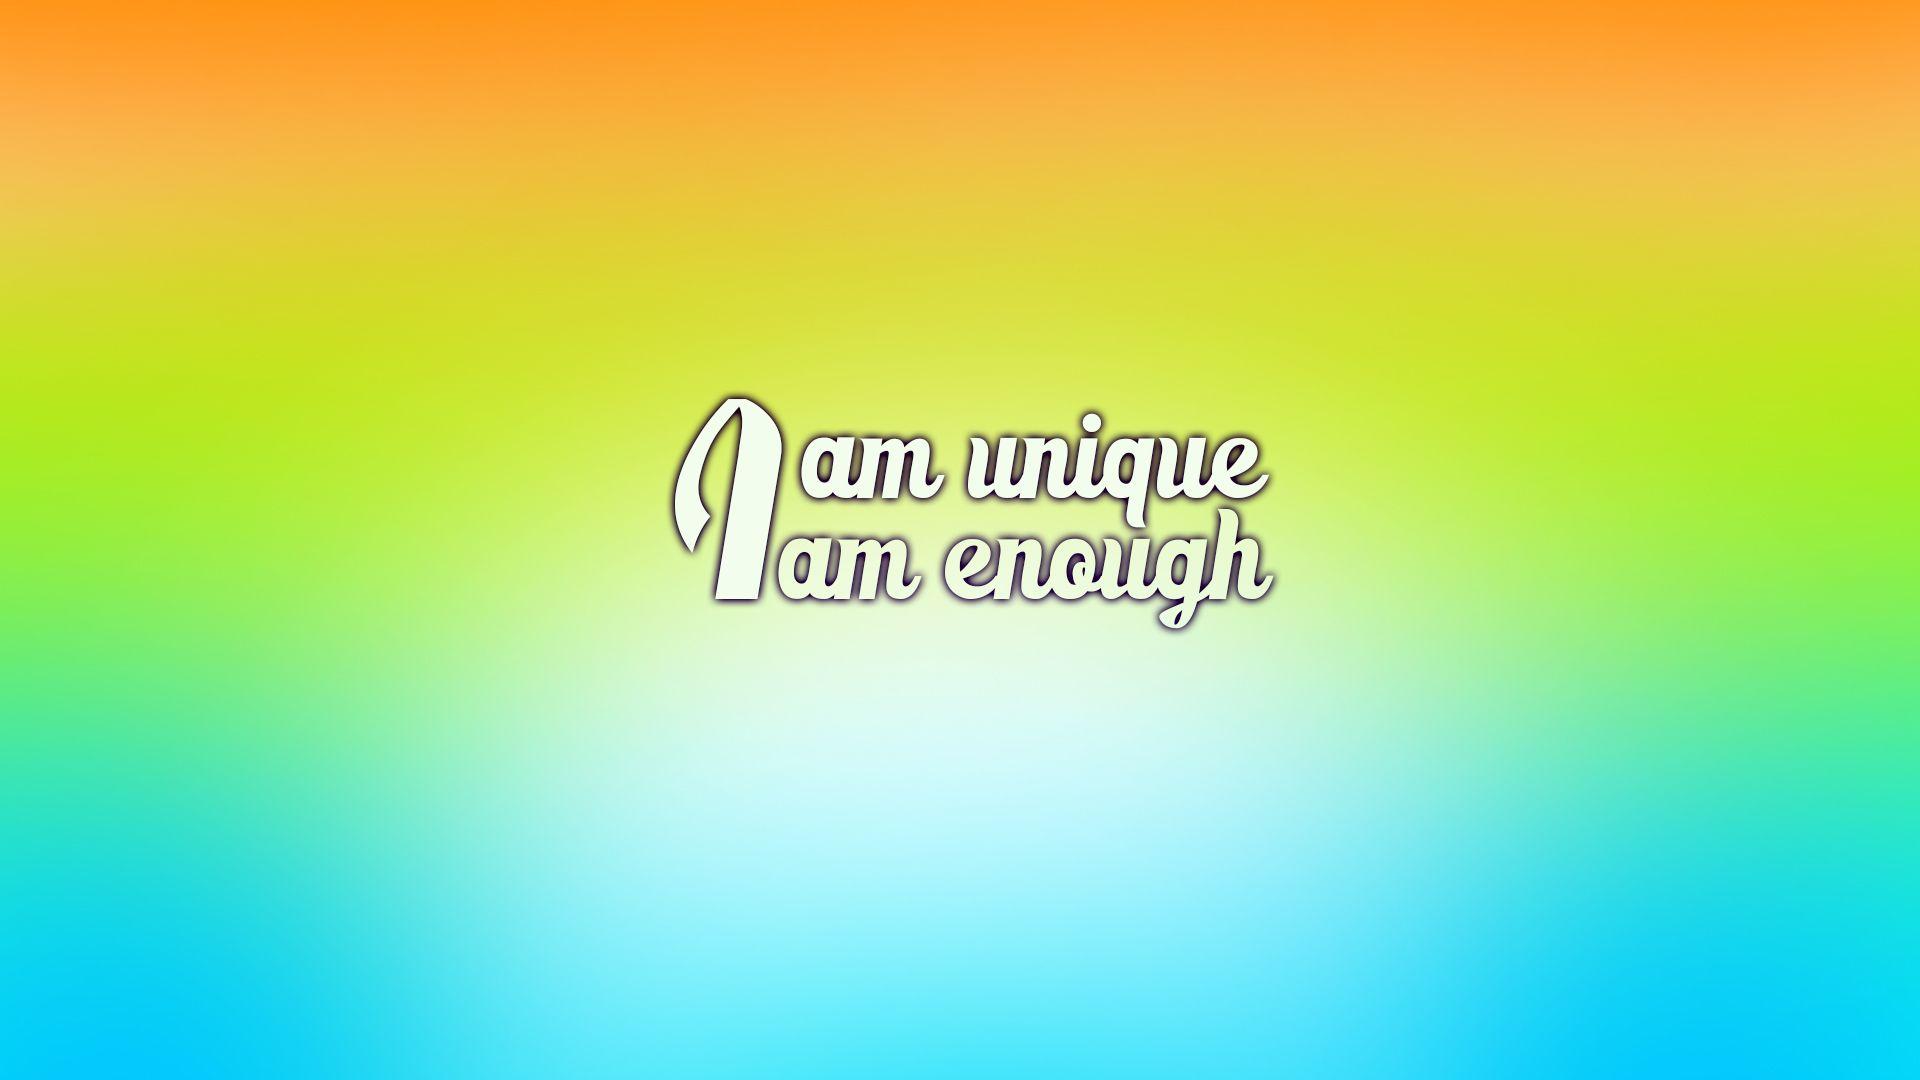 I am unique, I am enough